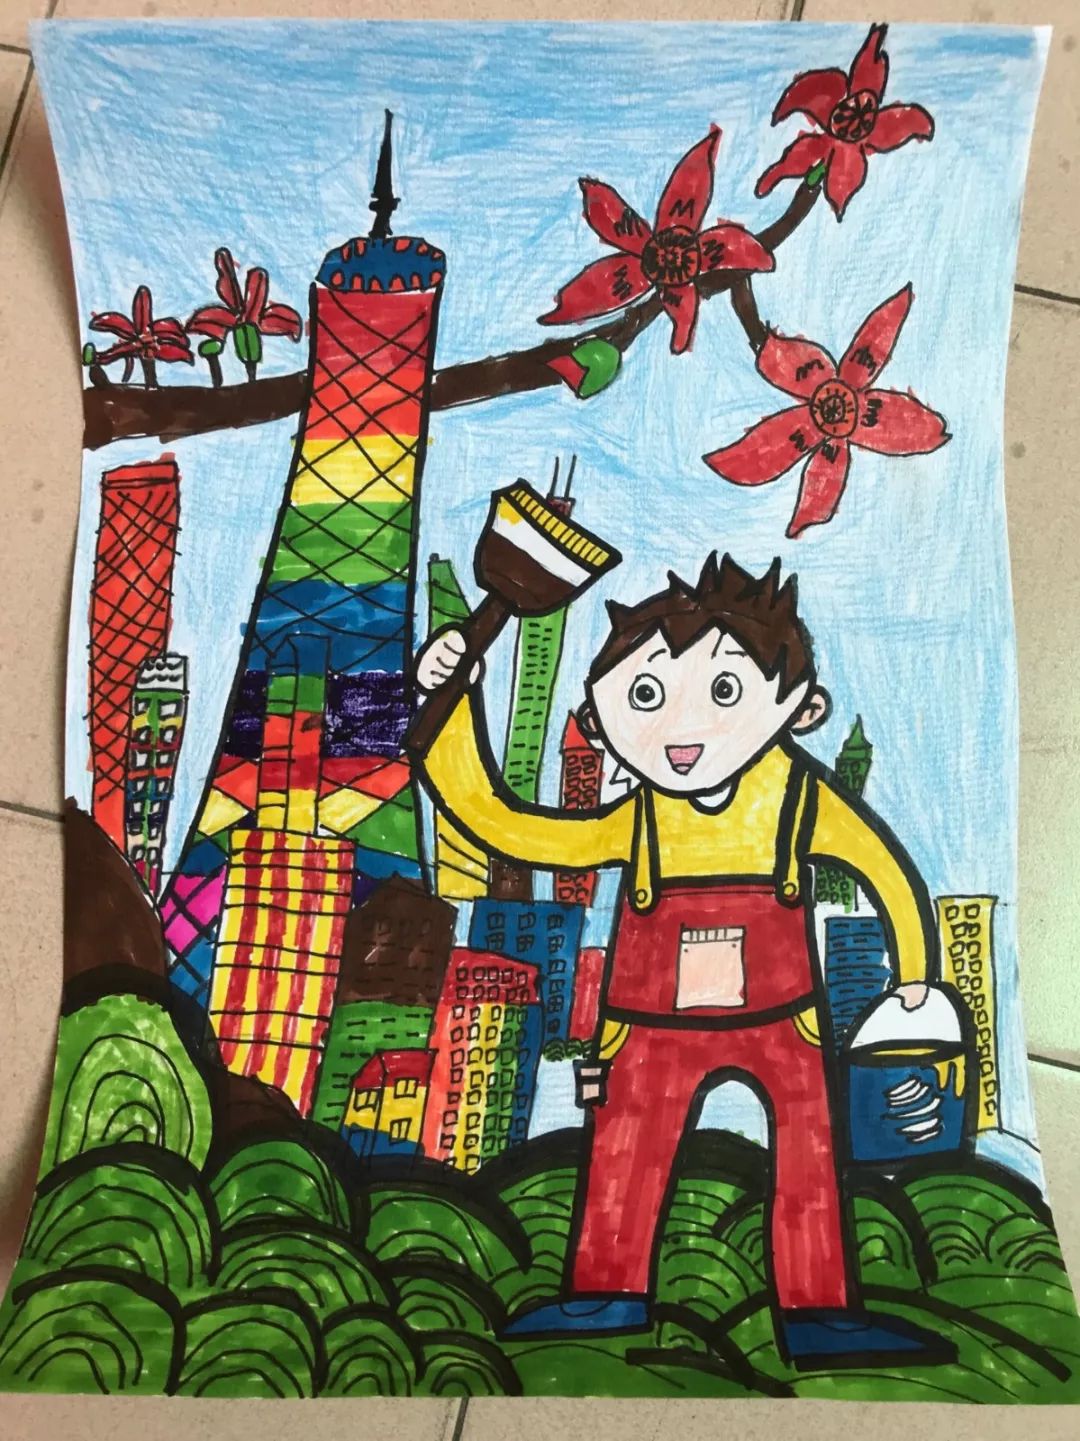 晓港湾小学在他们的画笔下新时代的广州竟然这么美